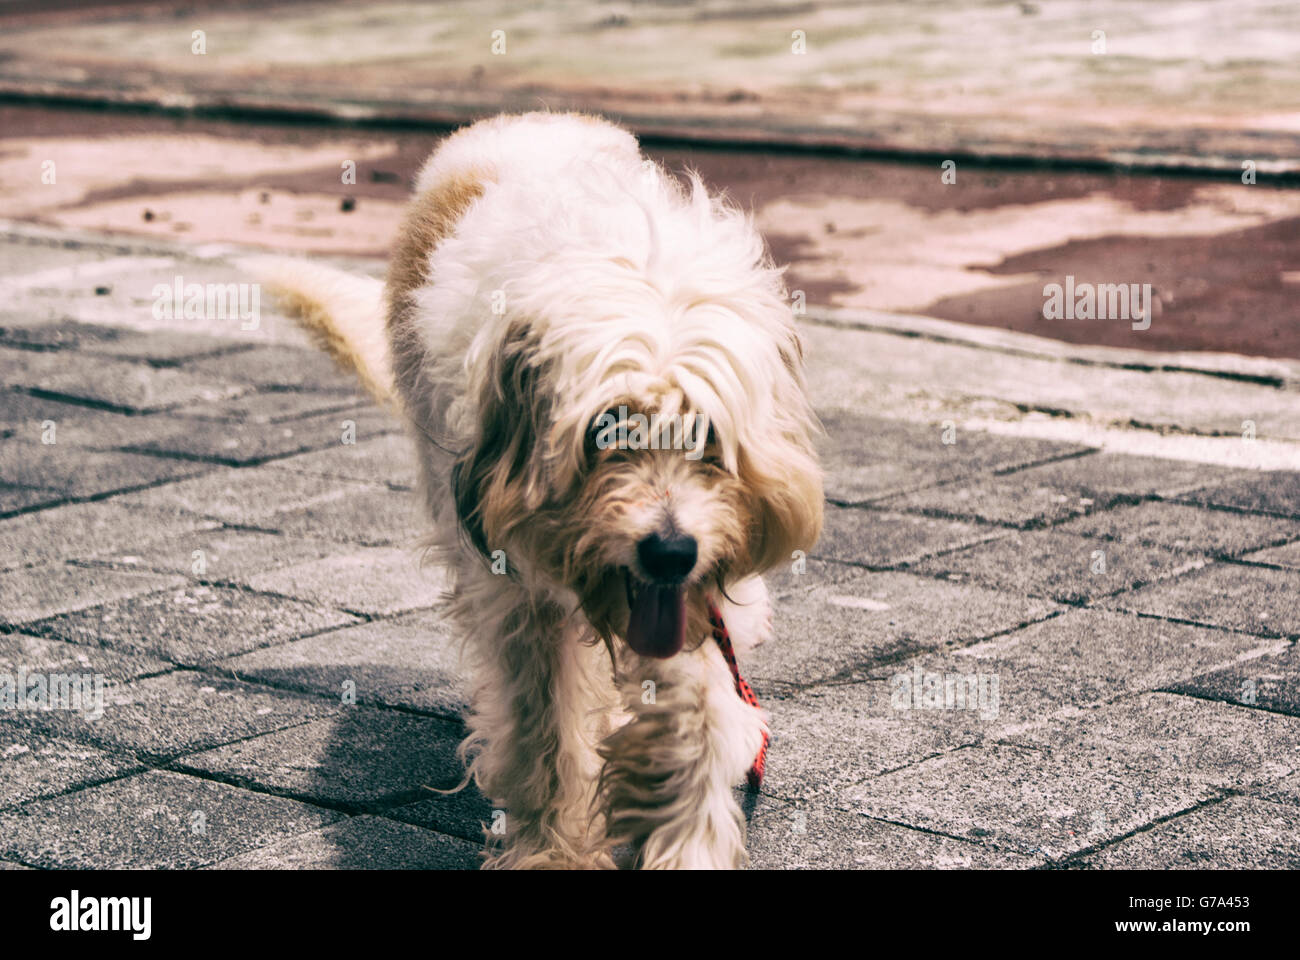 Fotografía de un perro peludo sobre un piso de hormigón Foto de stock